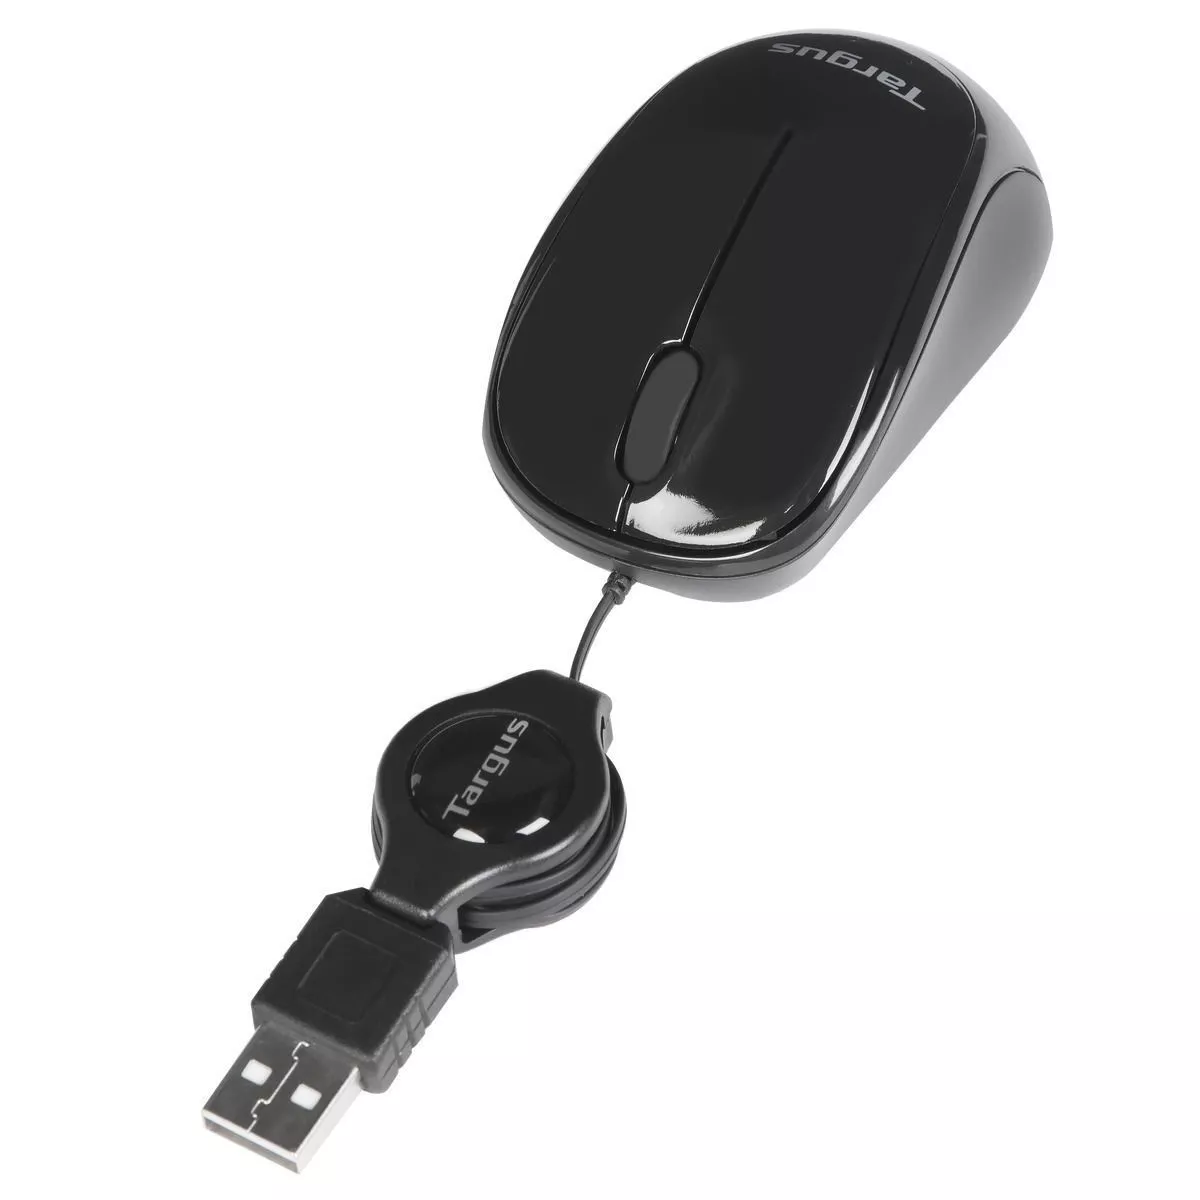 Vente TARGUS Souris compacte Blue Trace USB - Noire Targus au meilleur prix - visuel 2